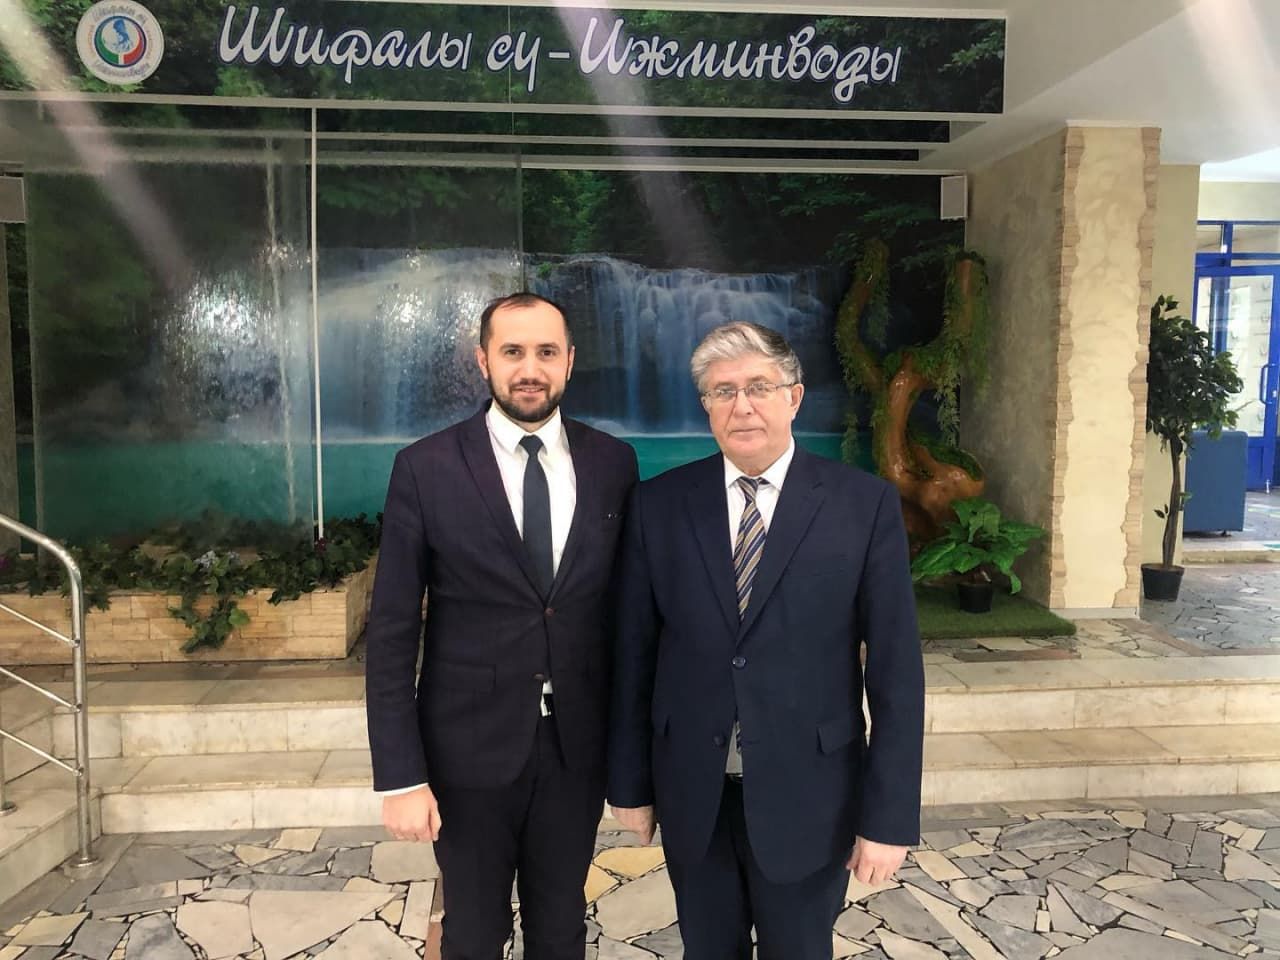 Ленар Ахметов посетил санаторий «Ижминводы Шифалы Су» с рабочим визитом